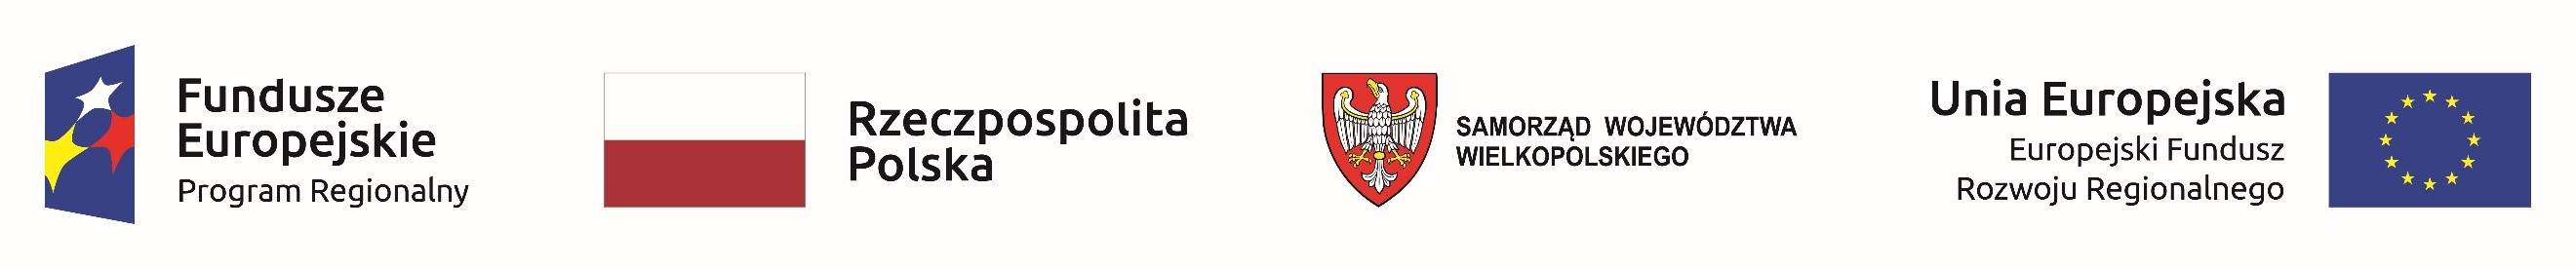 Logotypy Uni Europejskiej oraz Rzeczpospolitej Polskiej i Samorządu Województwa Wlkp.